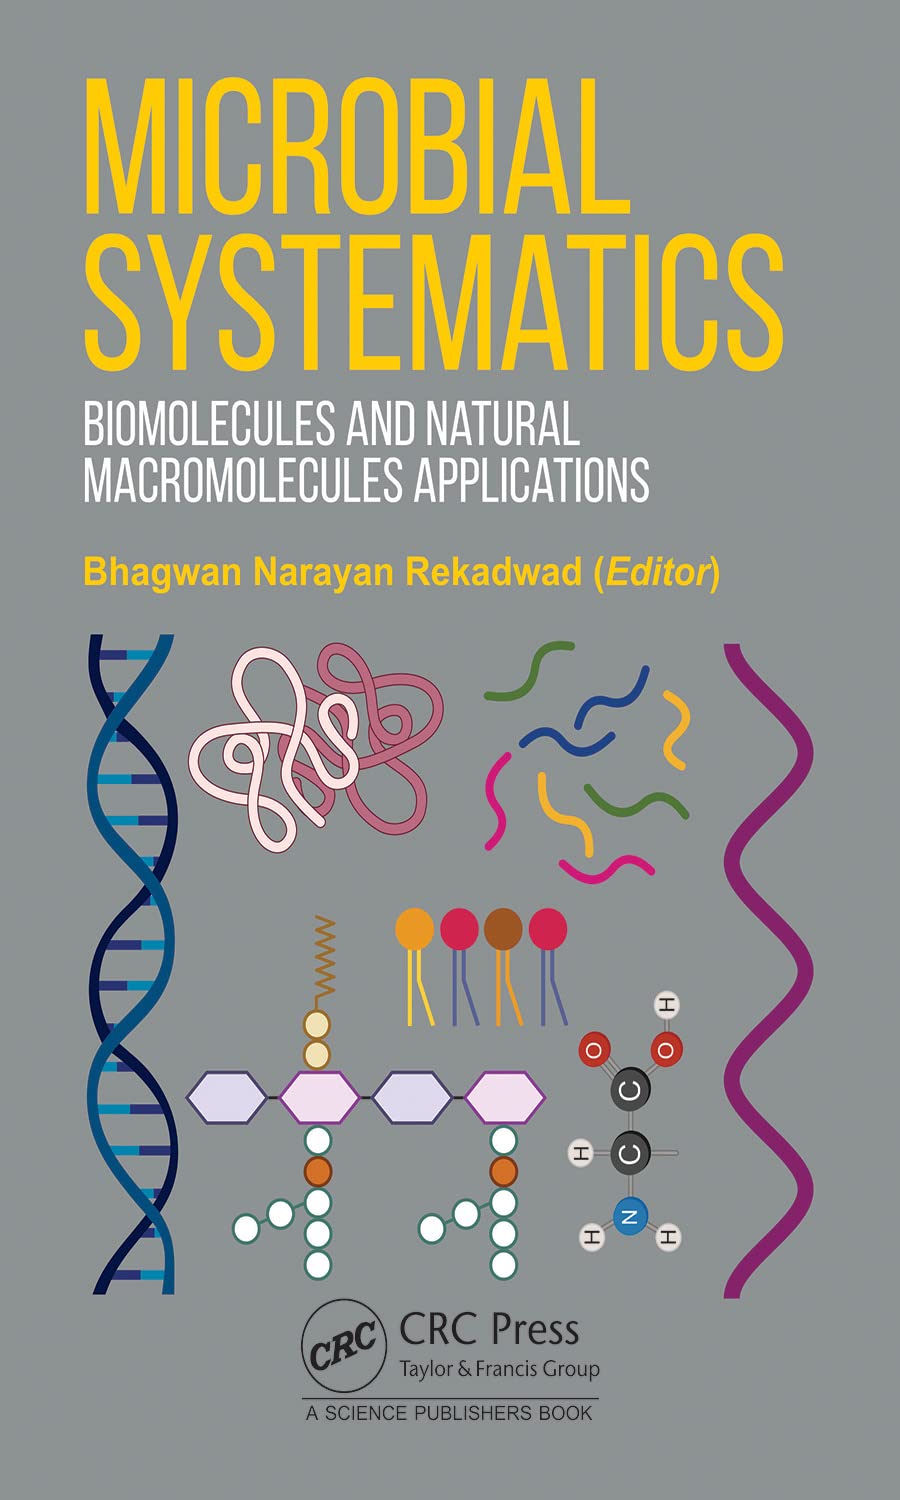 Microbial Systematics: Biomolecules and Natural Macromolecules Applications  by Bhagwan Narayan Rekadwad